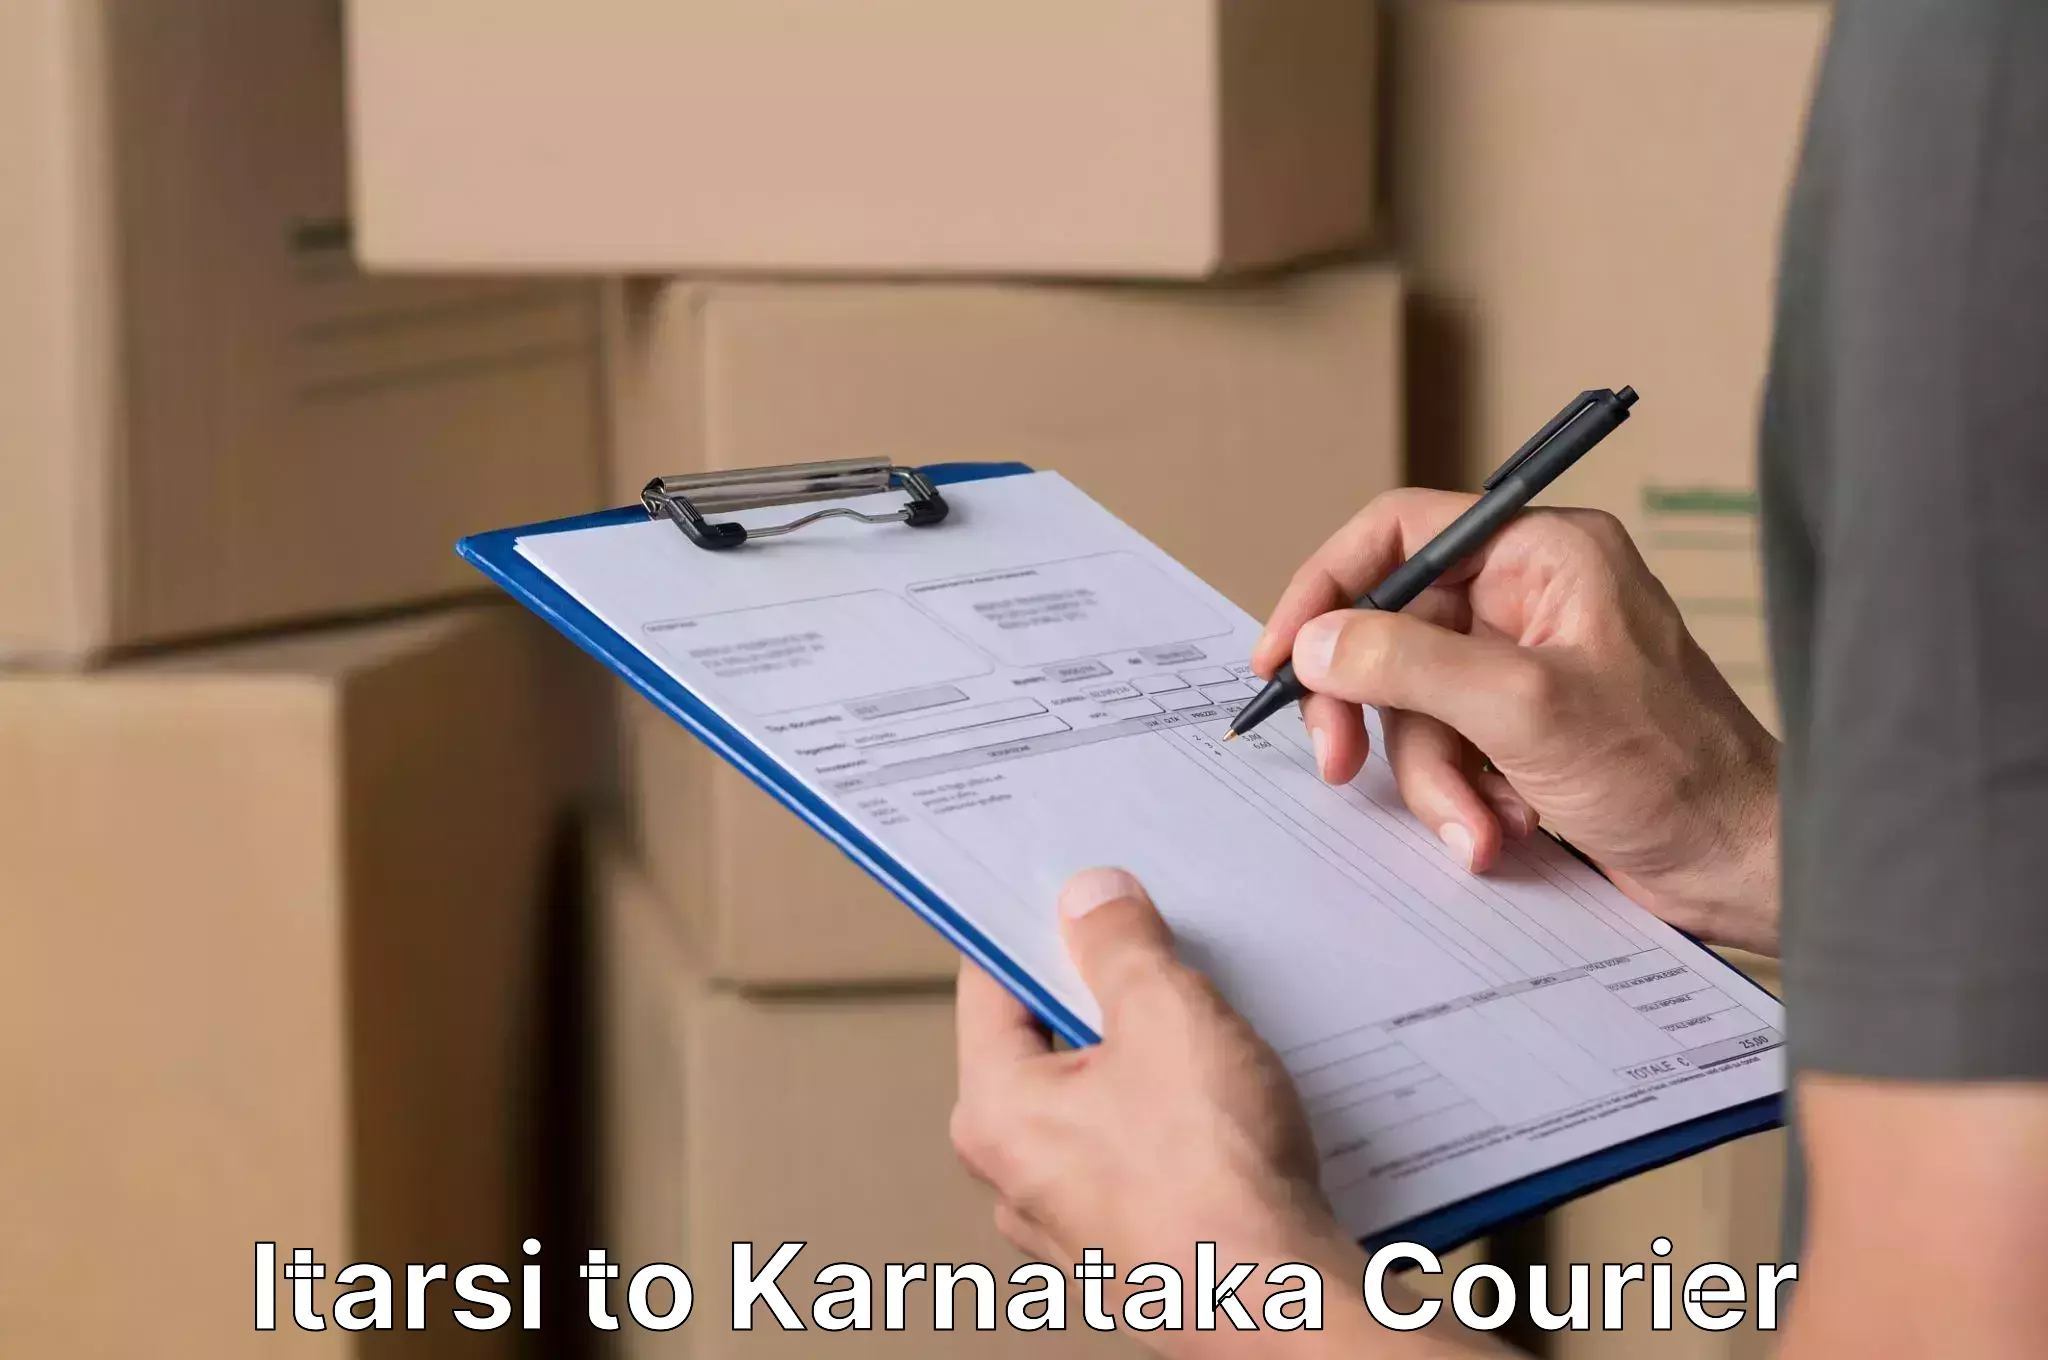 Stress-free furniture moving Itarsi to Karnataka